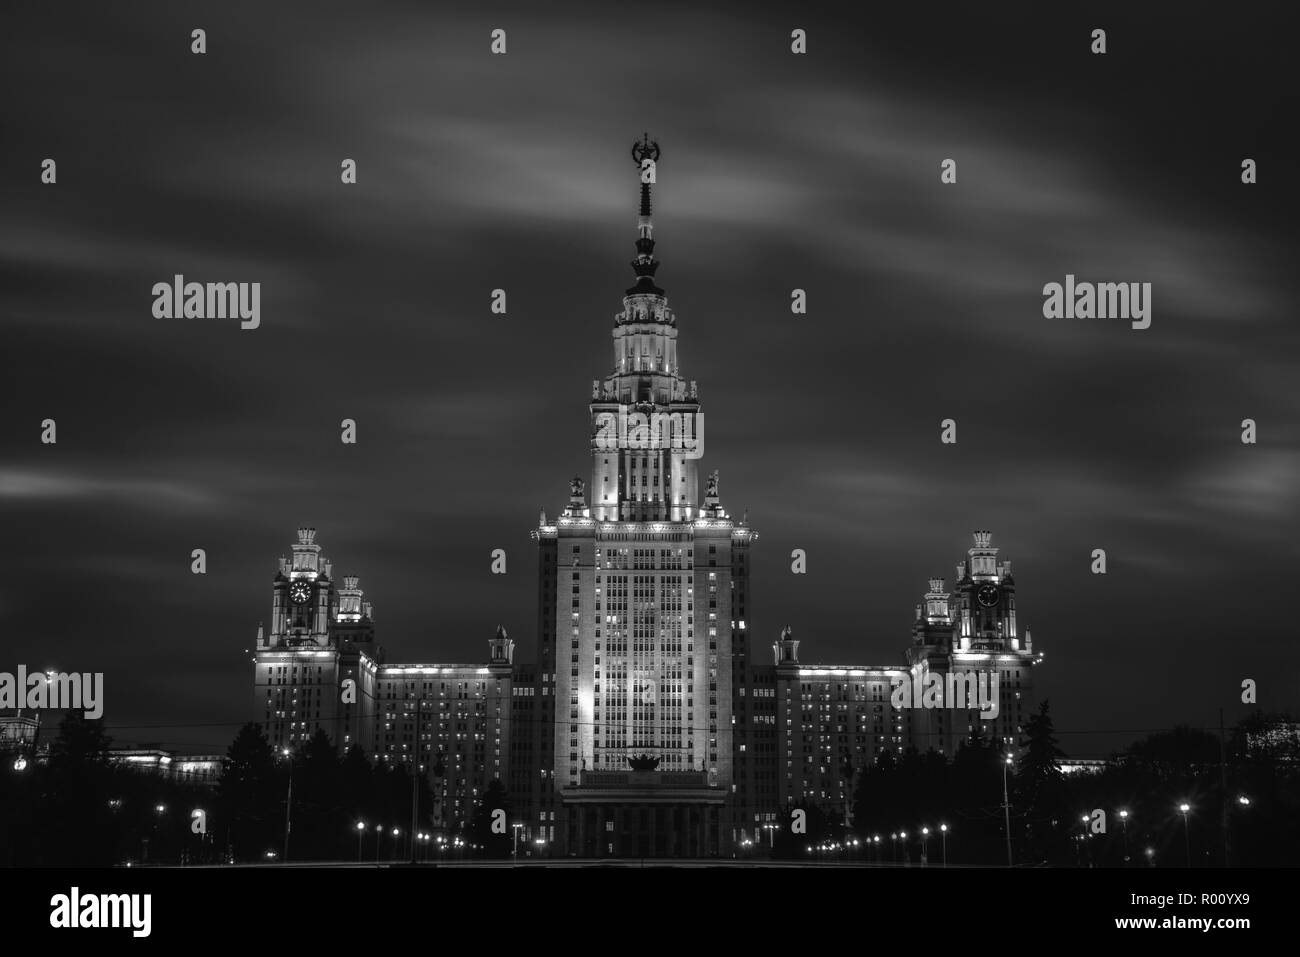 Moscú, Rusia. Universidad Estatal de Moscú Lomonosov en la noche durante la lluvia. Hito popular en Moscú, la capital de Rusia. Cielo oscuro, negro y whit Foto de stock